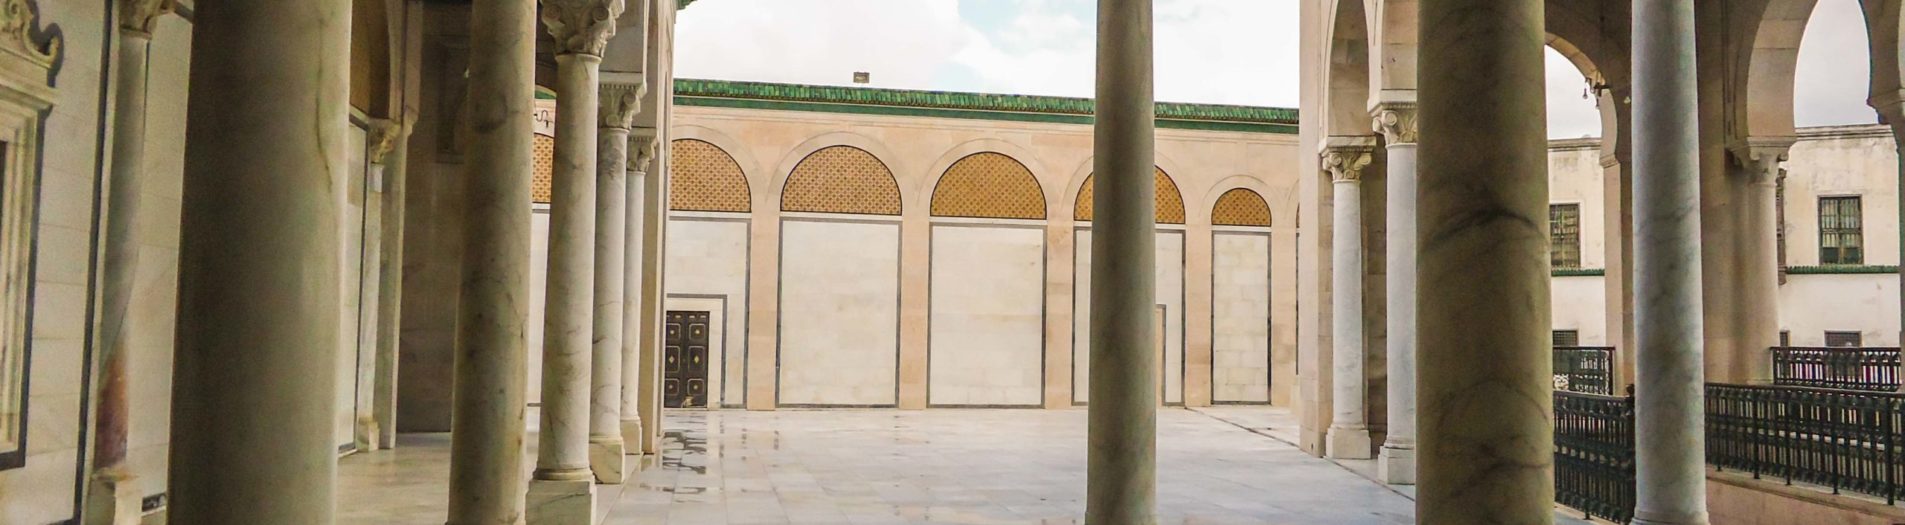 Mosquée Youssef Saheb Tabaa